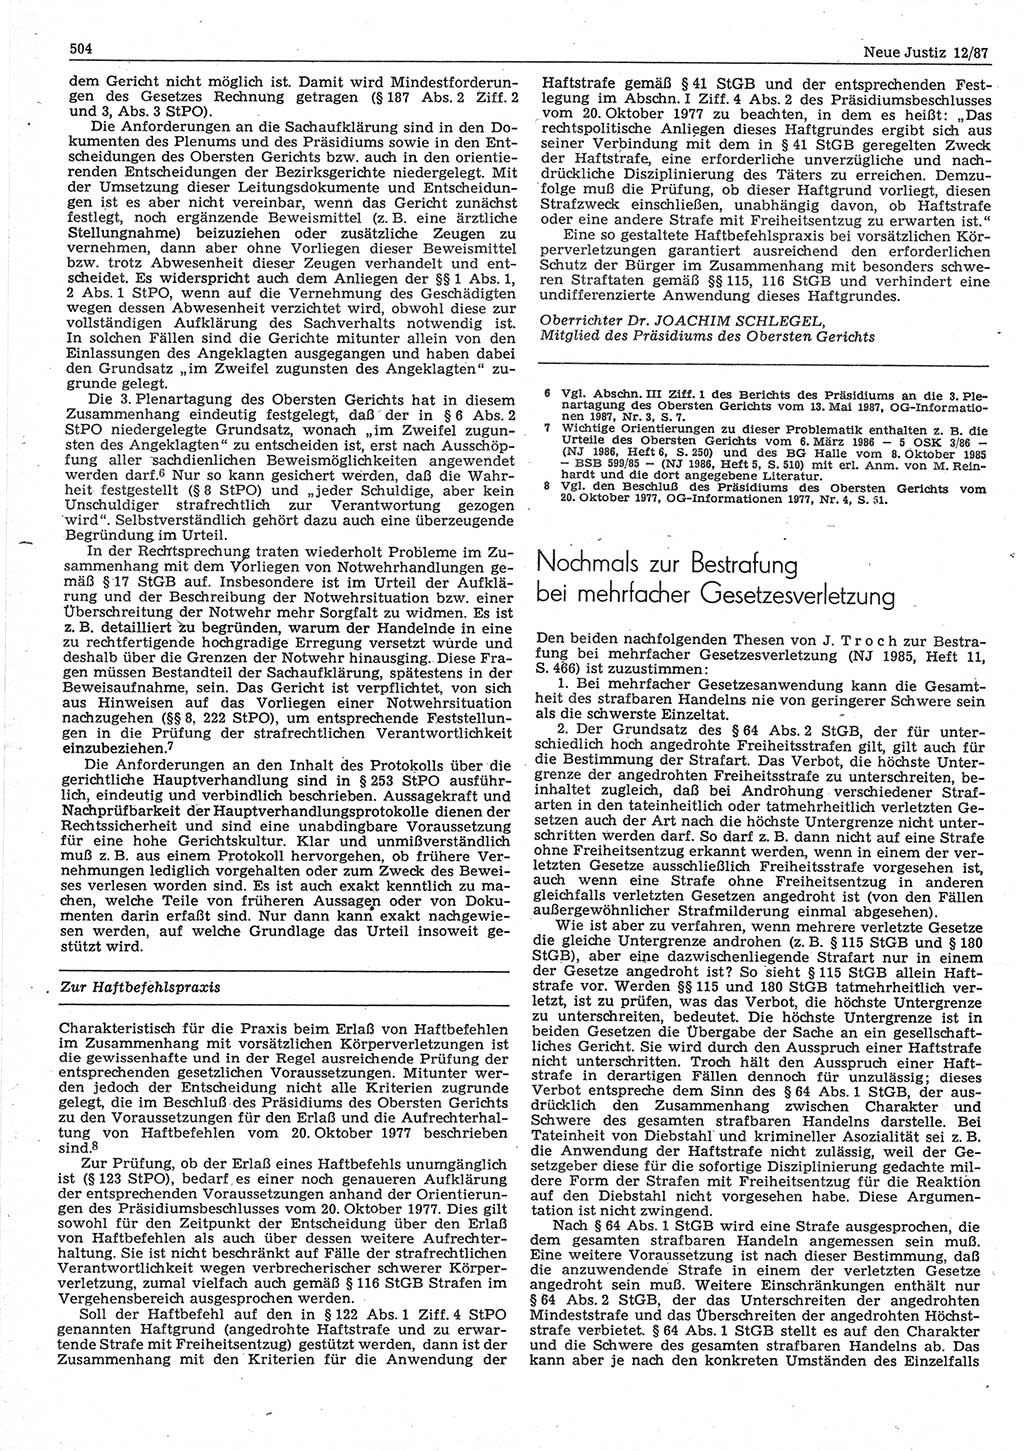 Neue Justiz (NJ), Zeitschrift für sozialistisches Recht und Gesetzlichkeit [Deutsche Demokratische Republik (DDR)], 41. Jahrgang 1987, Seite 504 (NJ DDR 1987, S. 504)